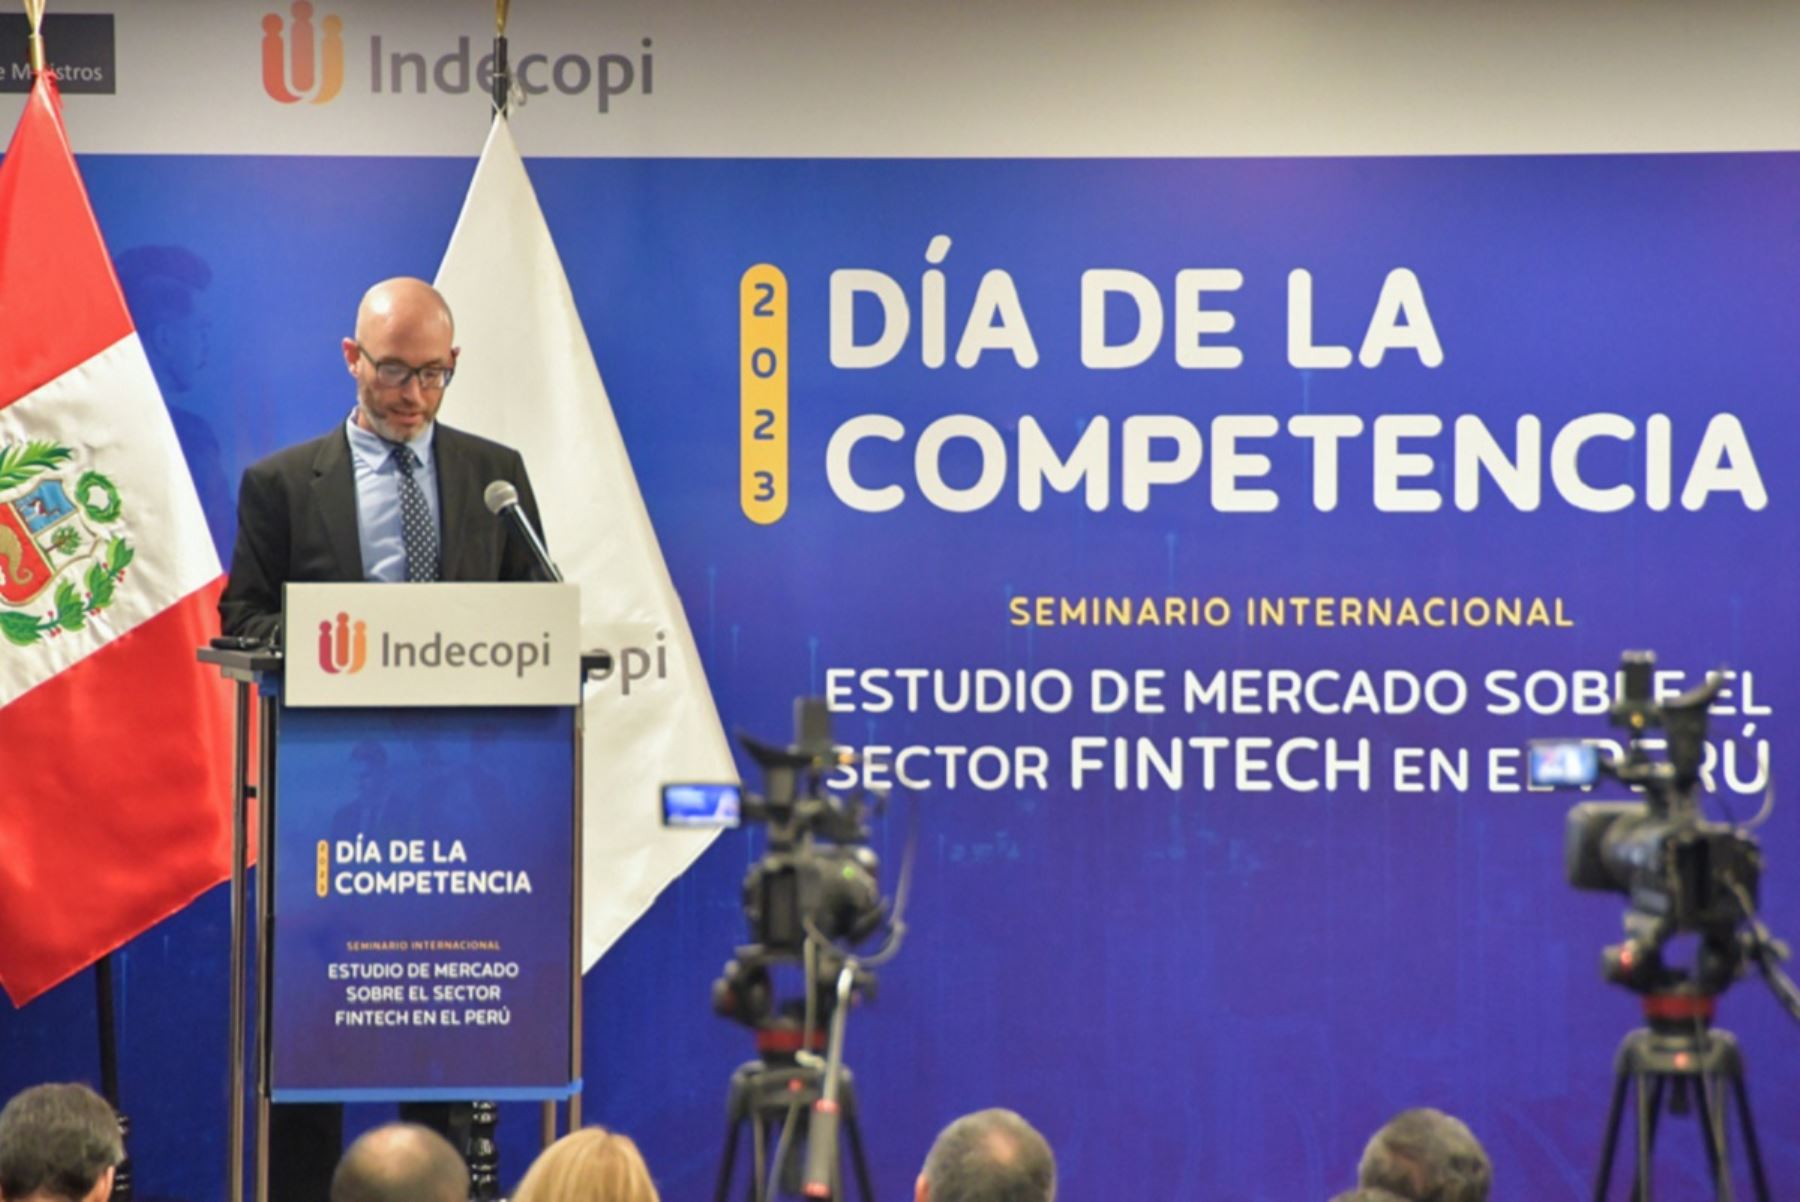 Tecnología Financiera: Indecopi propone sugerencias para potenciar los servicios de Fintech